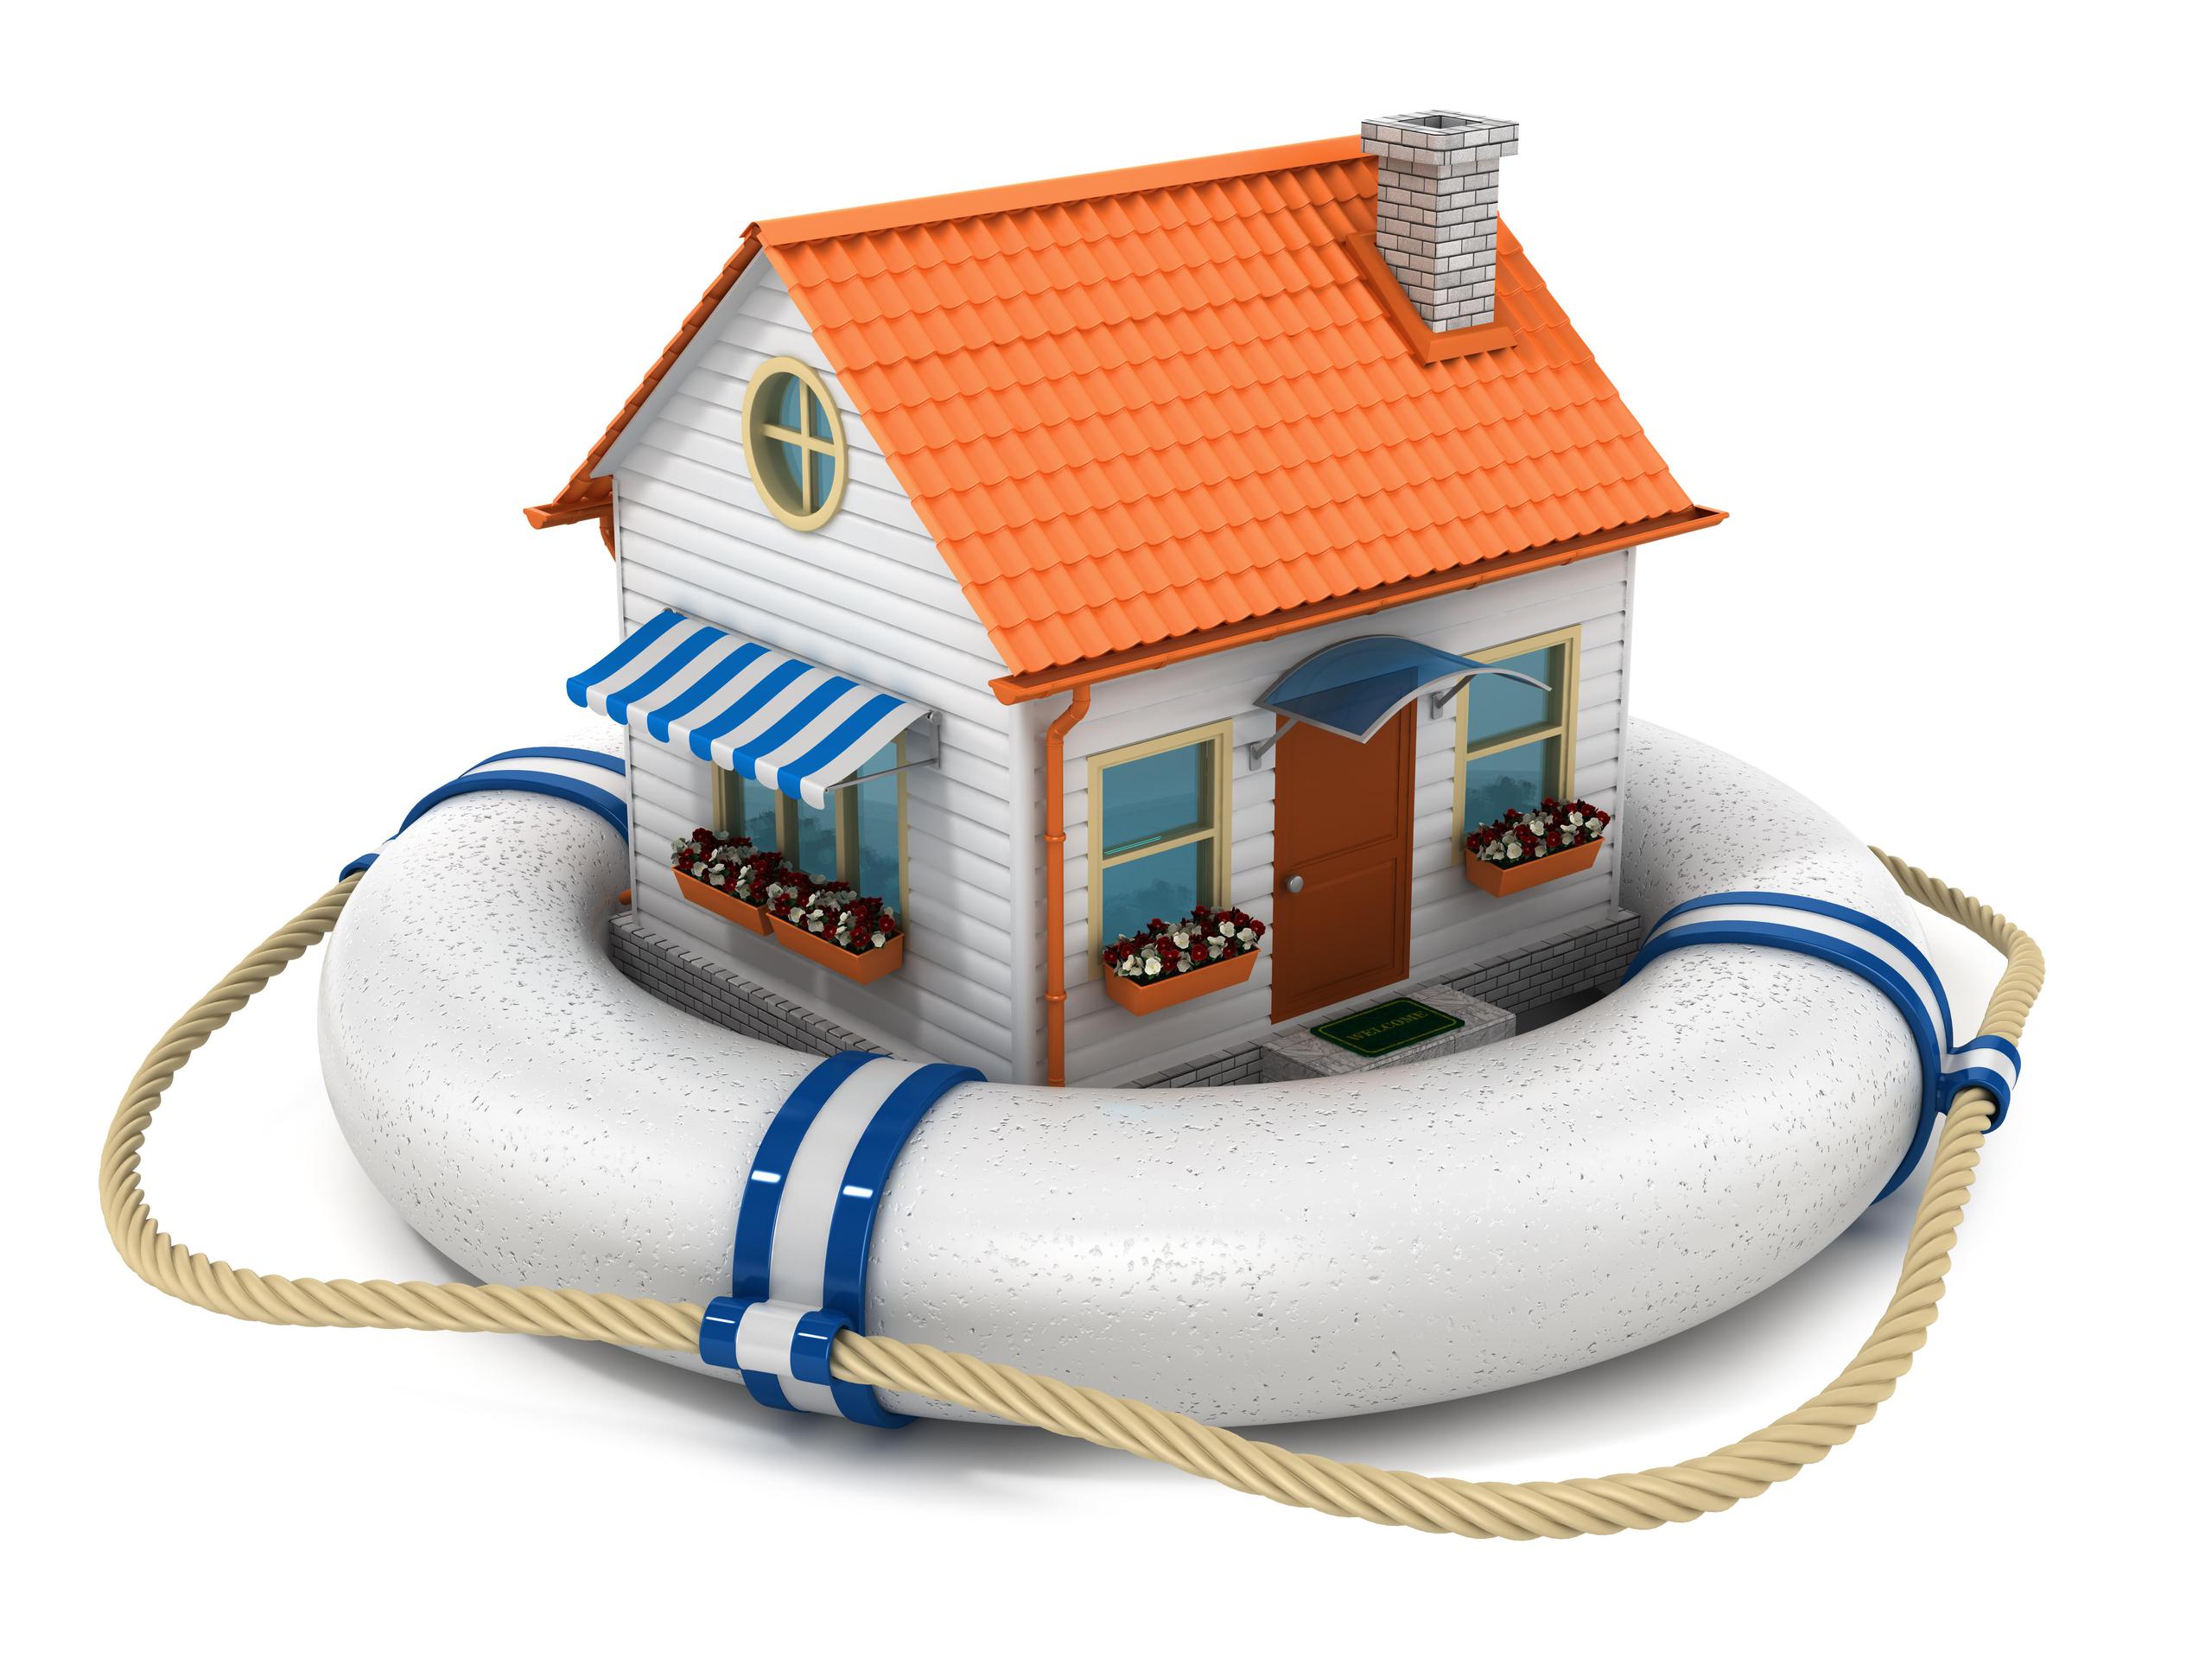 El seguro “hazard” o “dwelling” suele ser una póliza básica que puede adquirirse al hipotecar la propiedad, aunque también está disponible para viviendas que ya están saldas. (Shutterstock)